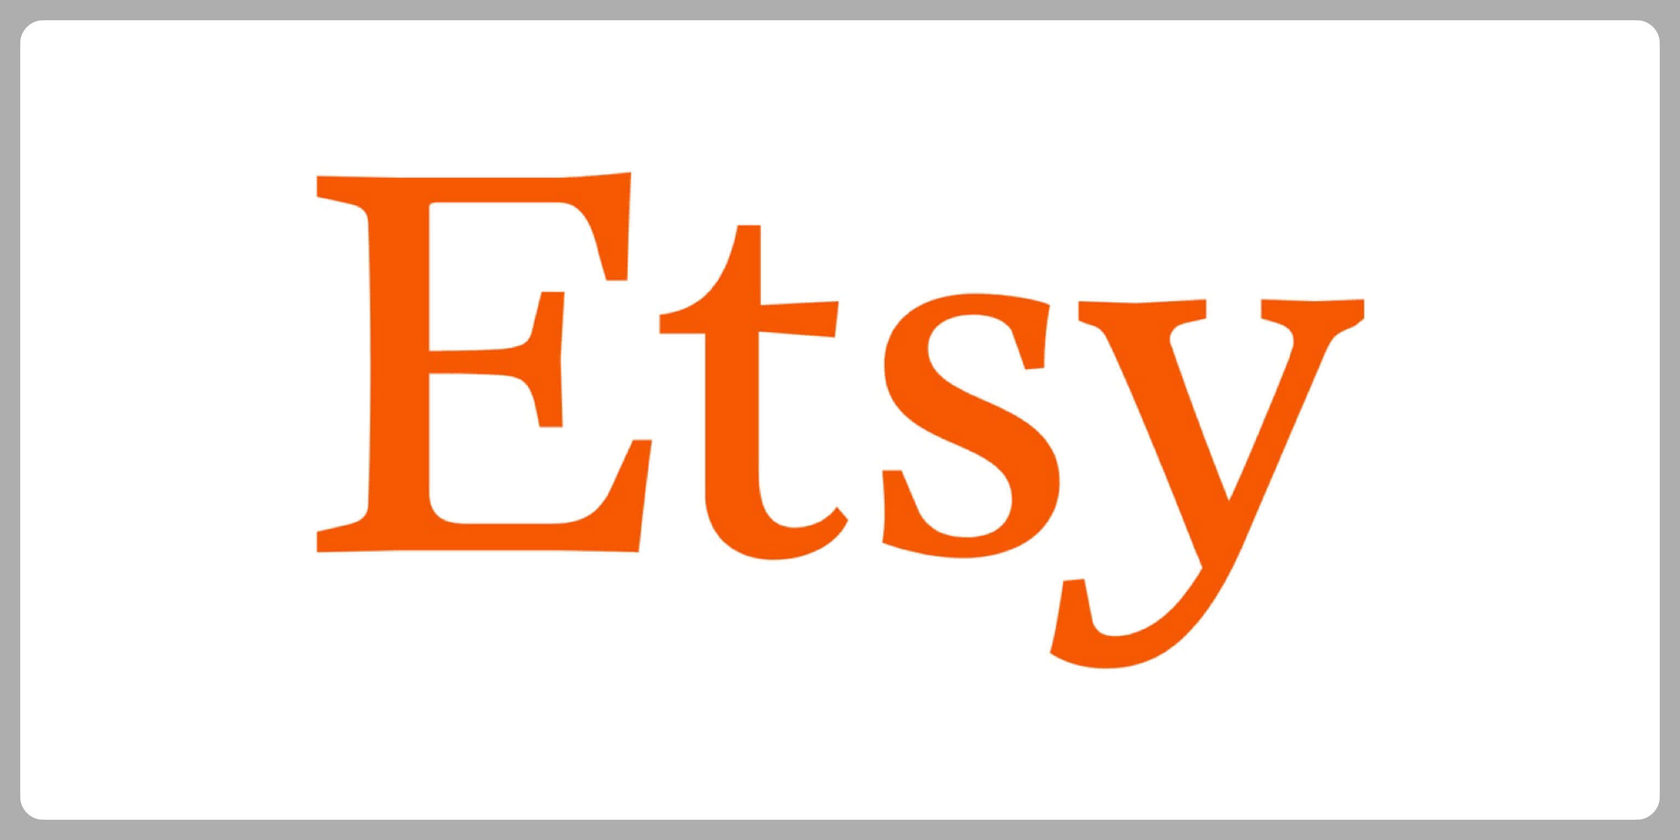 Etsy Inc.